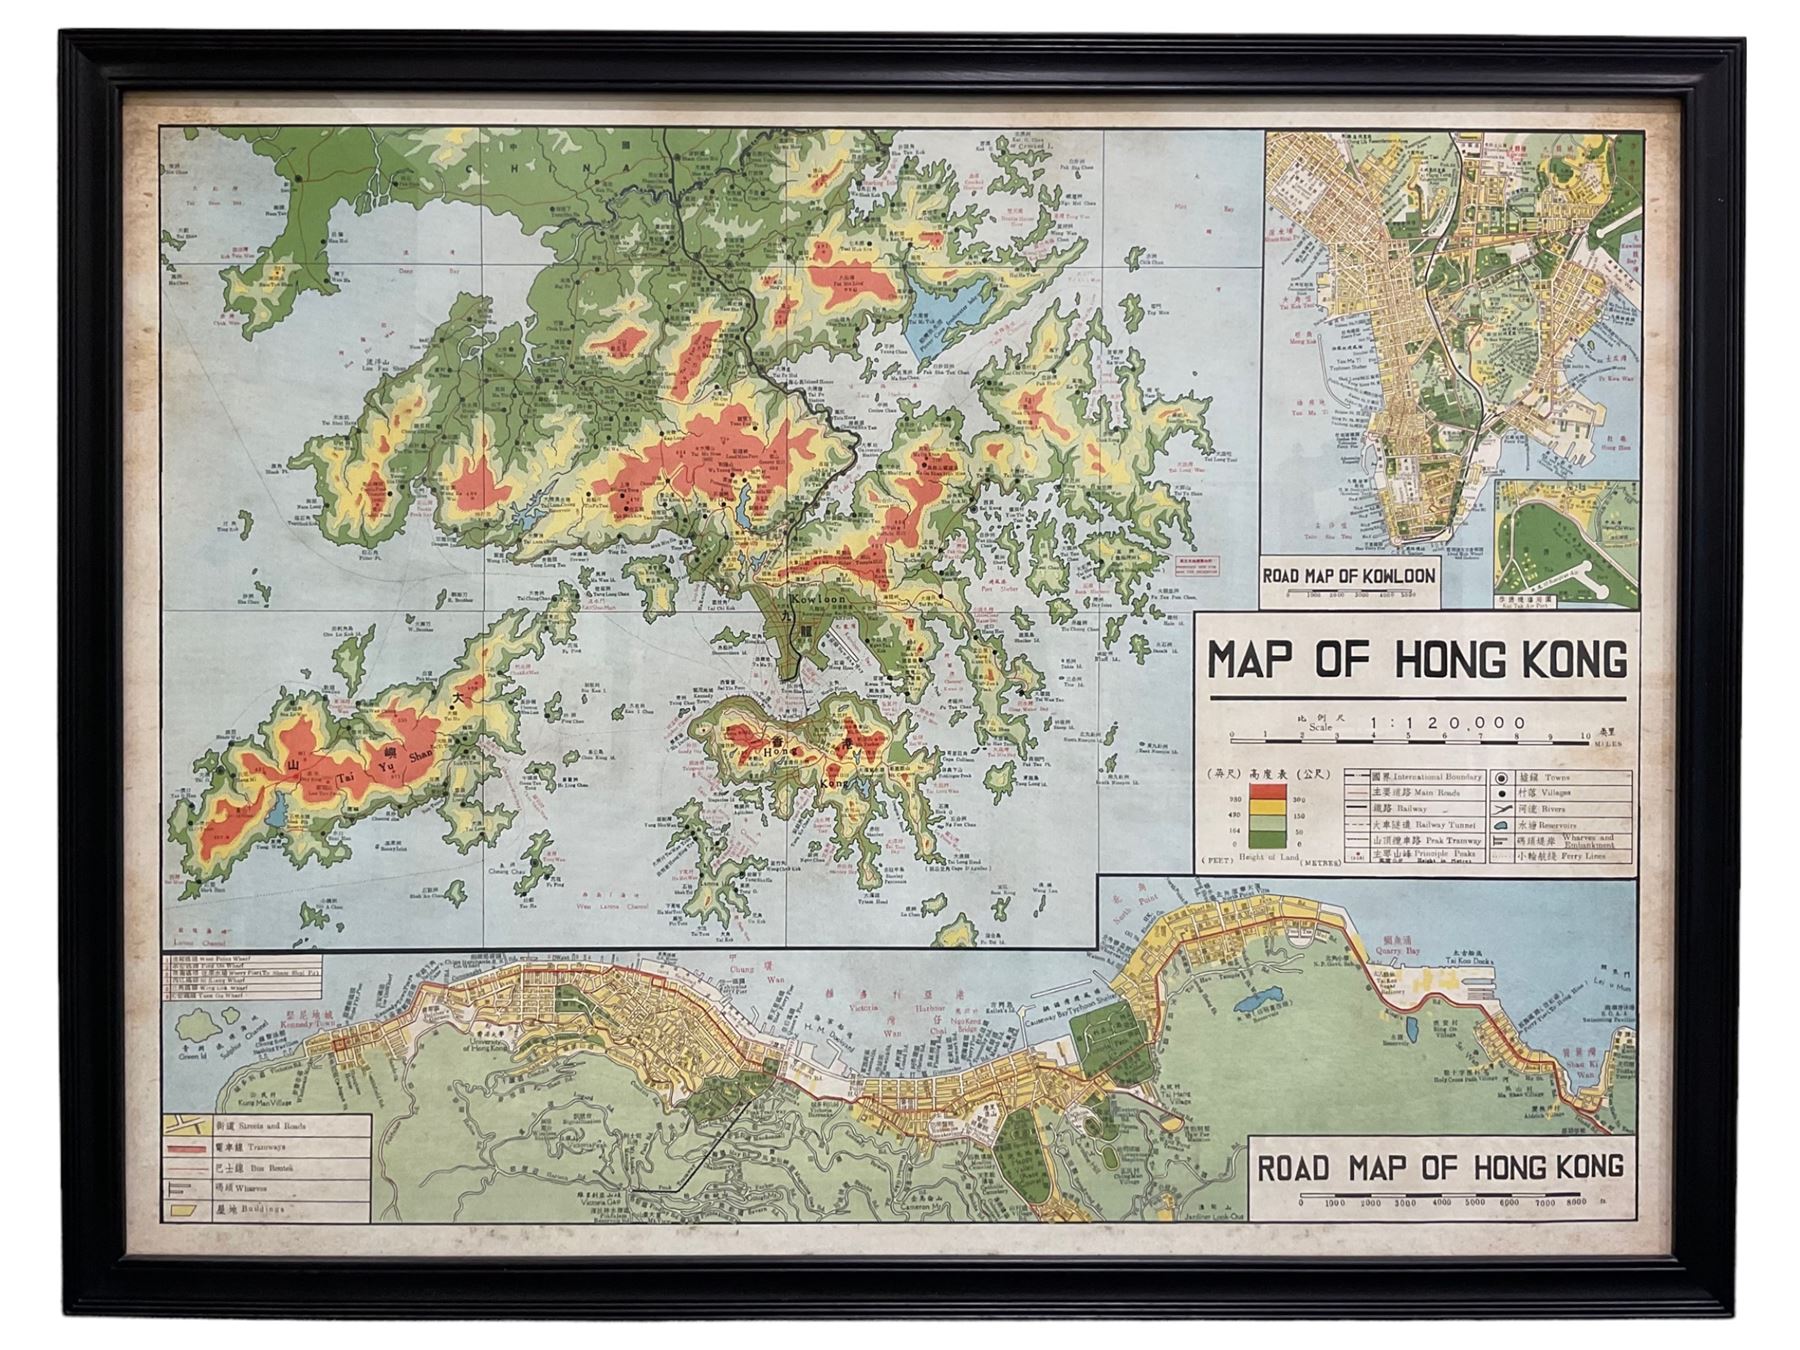 DS Large rare map of Hong Kong with road maps of Kowloon and Hong Kong ...